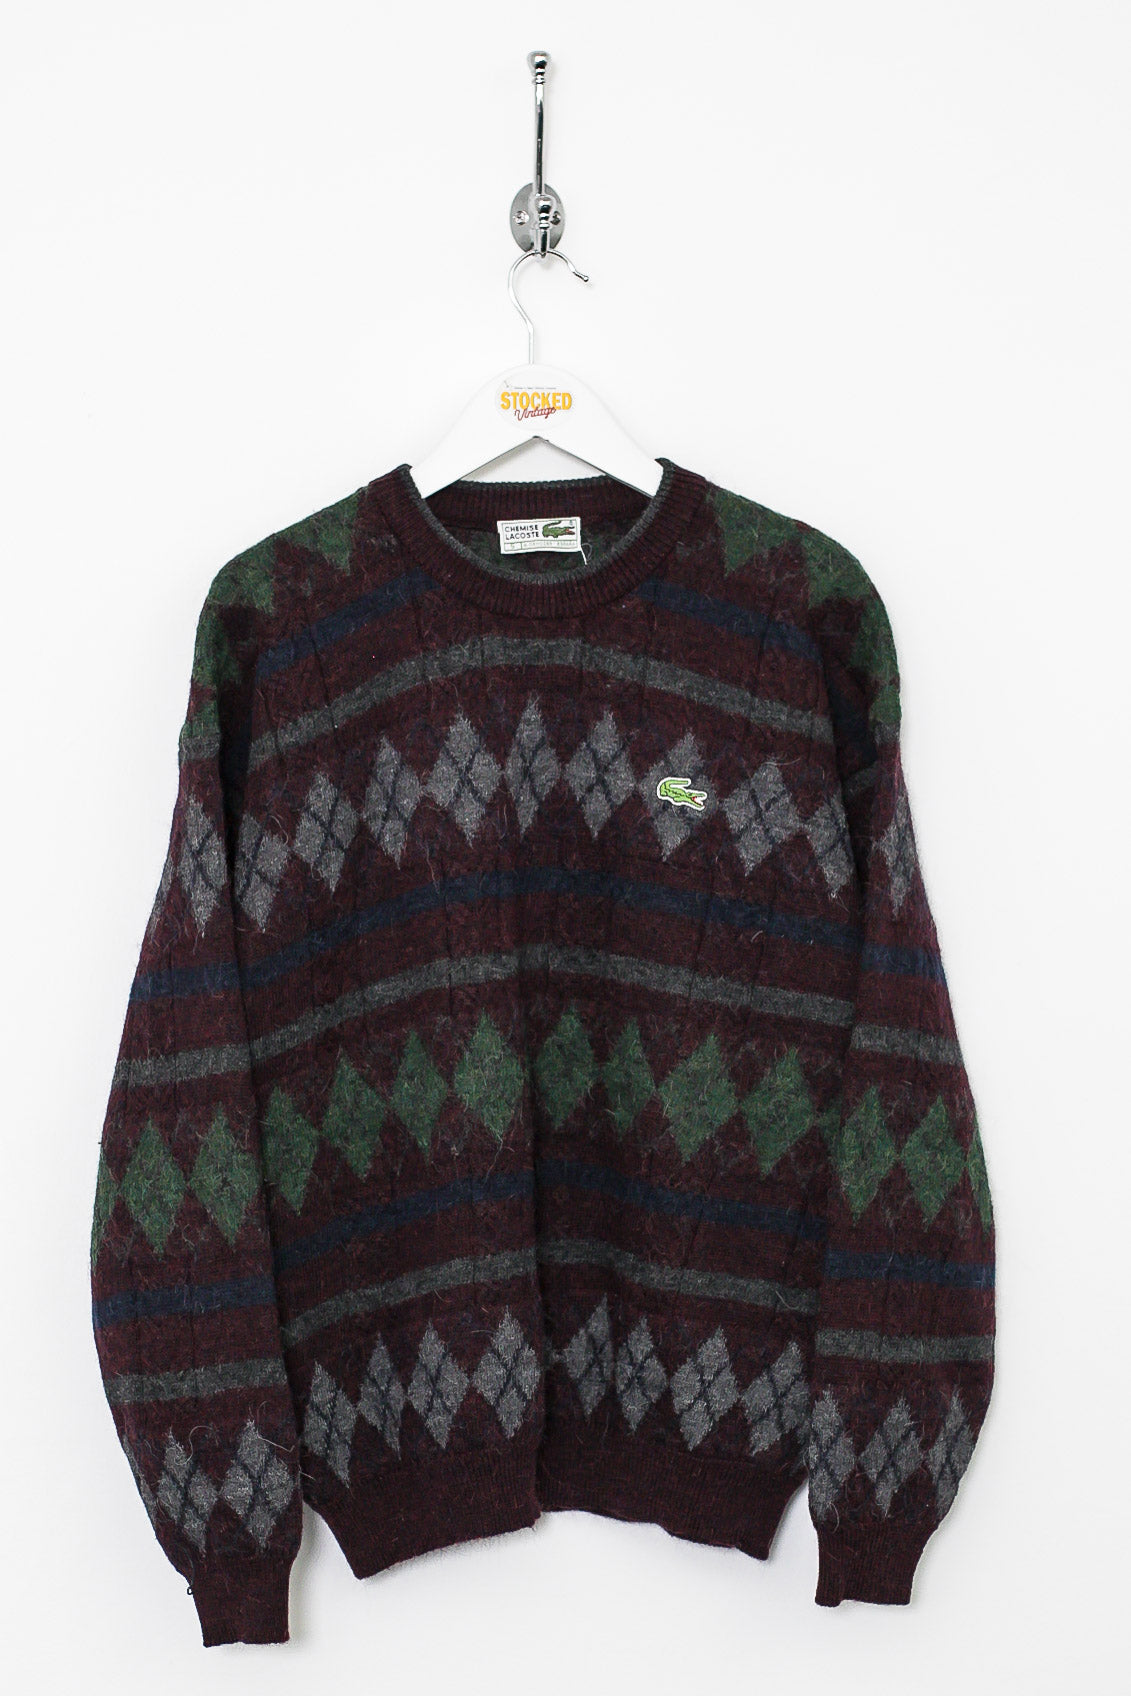 90s Lacoste Knit Sweatshirt (S)